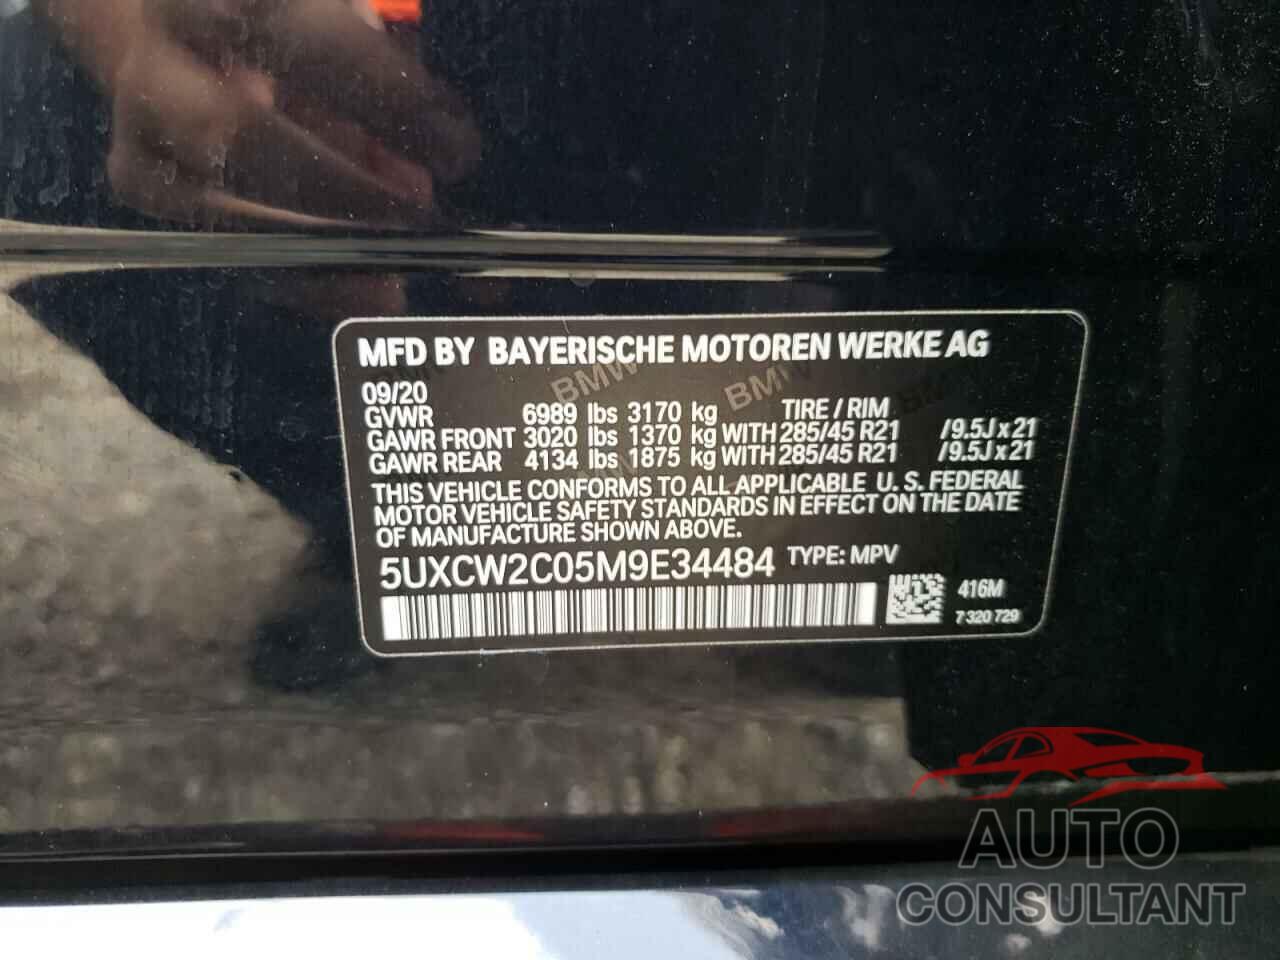 BMW X7 2021 - 5UXCW2C05M9E34484